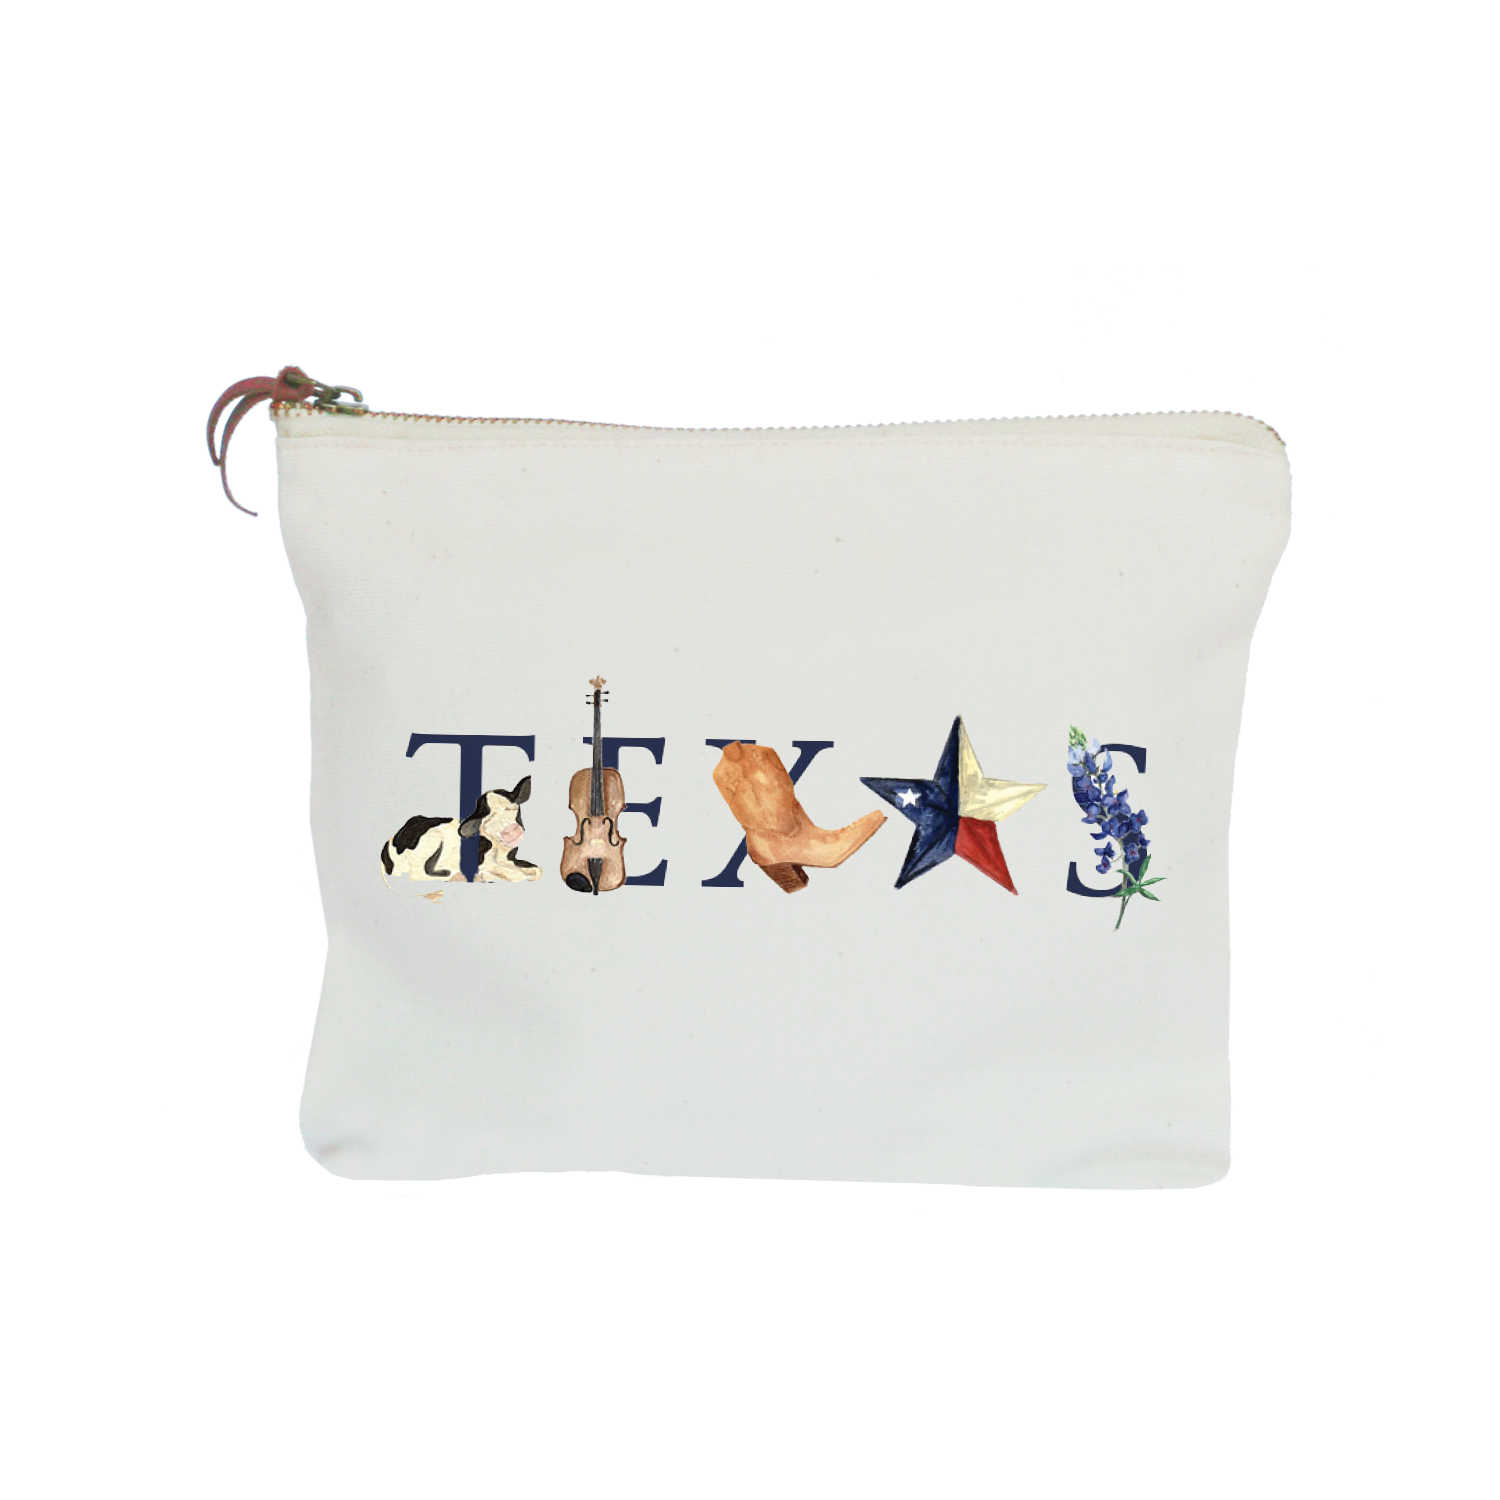 Texas zipper pouch